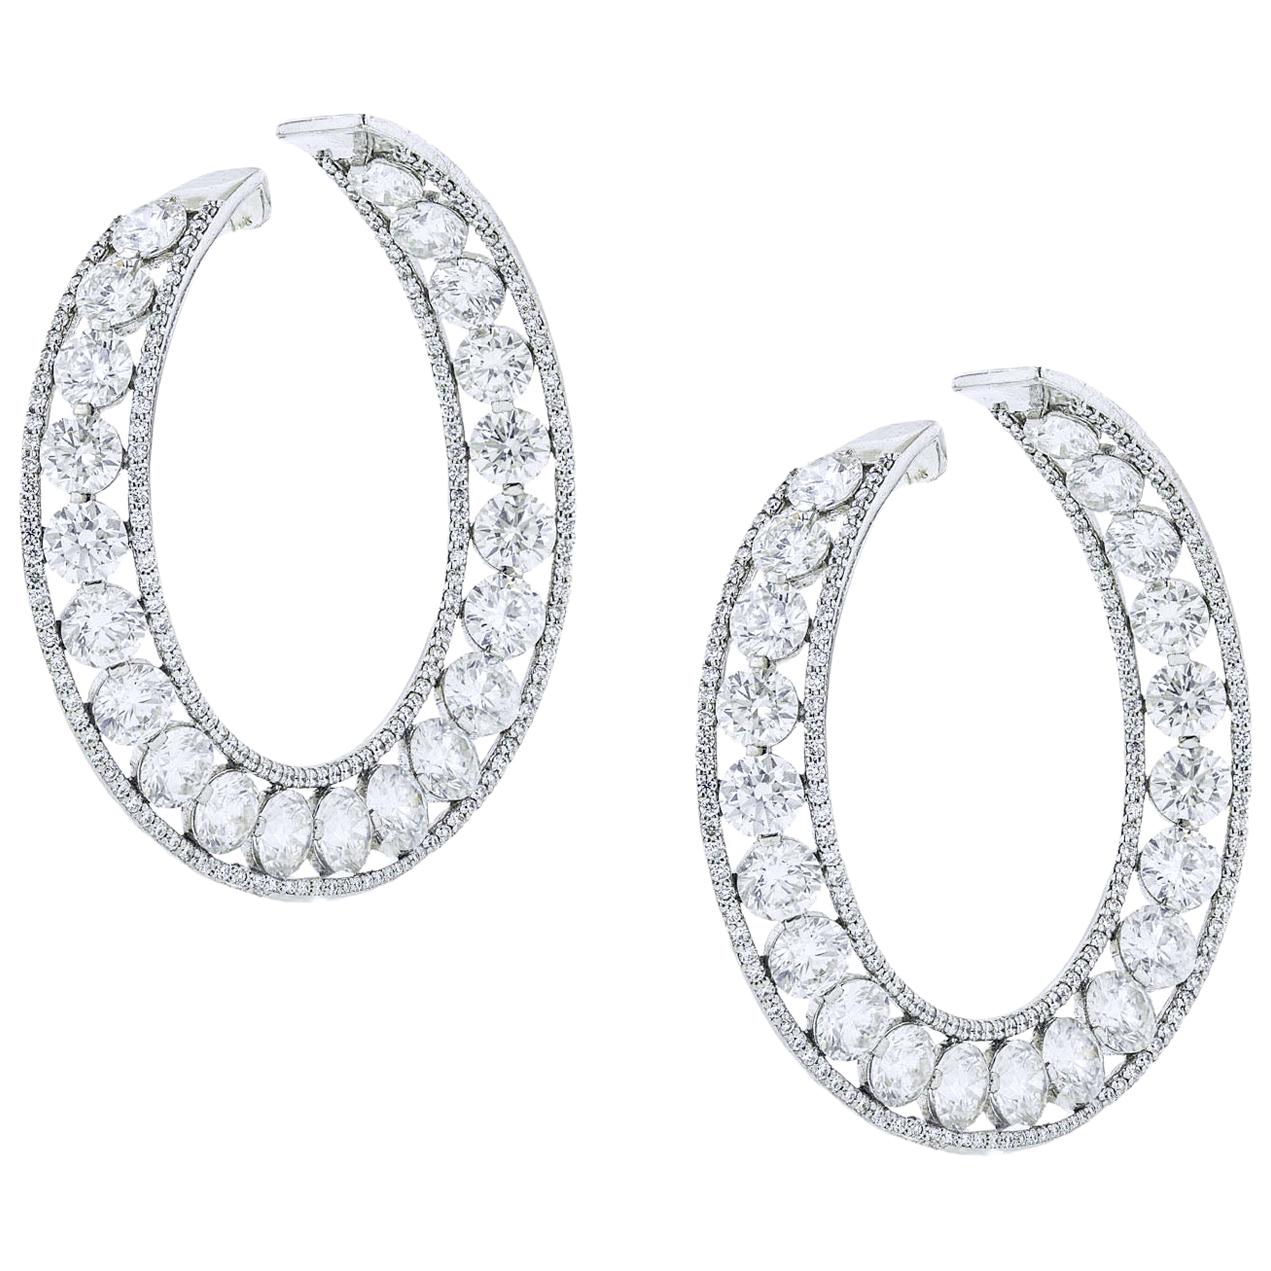 Diana M. Important Diamond Hoop Earrings